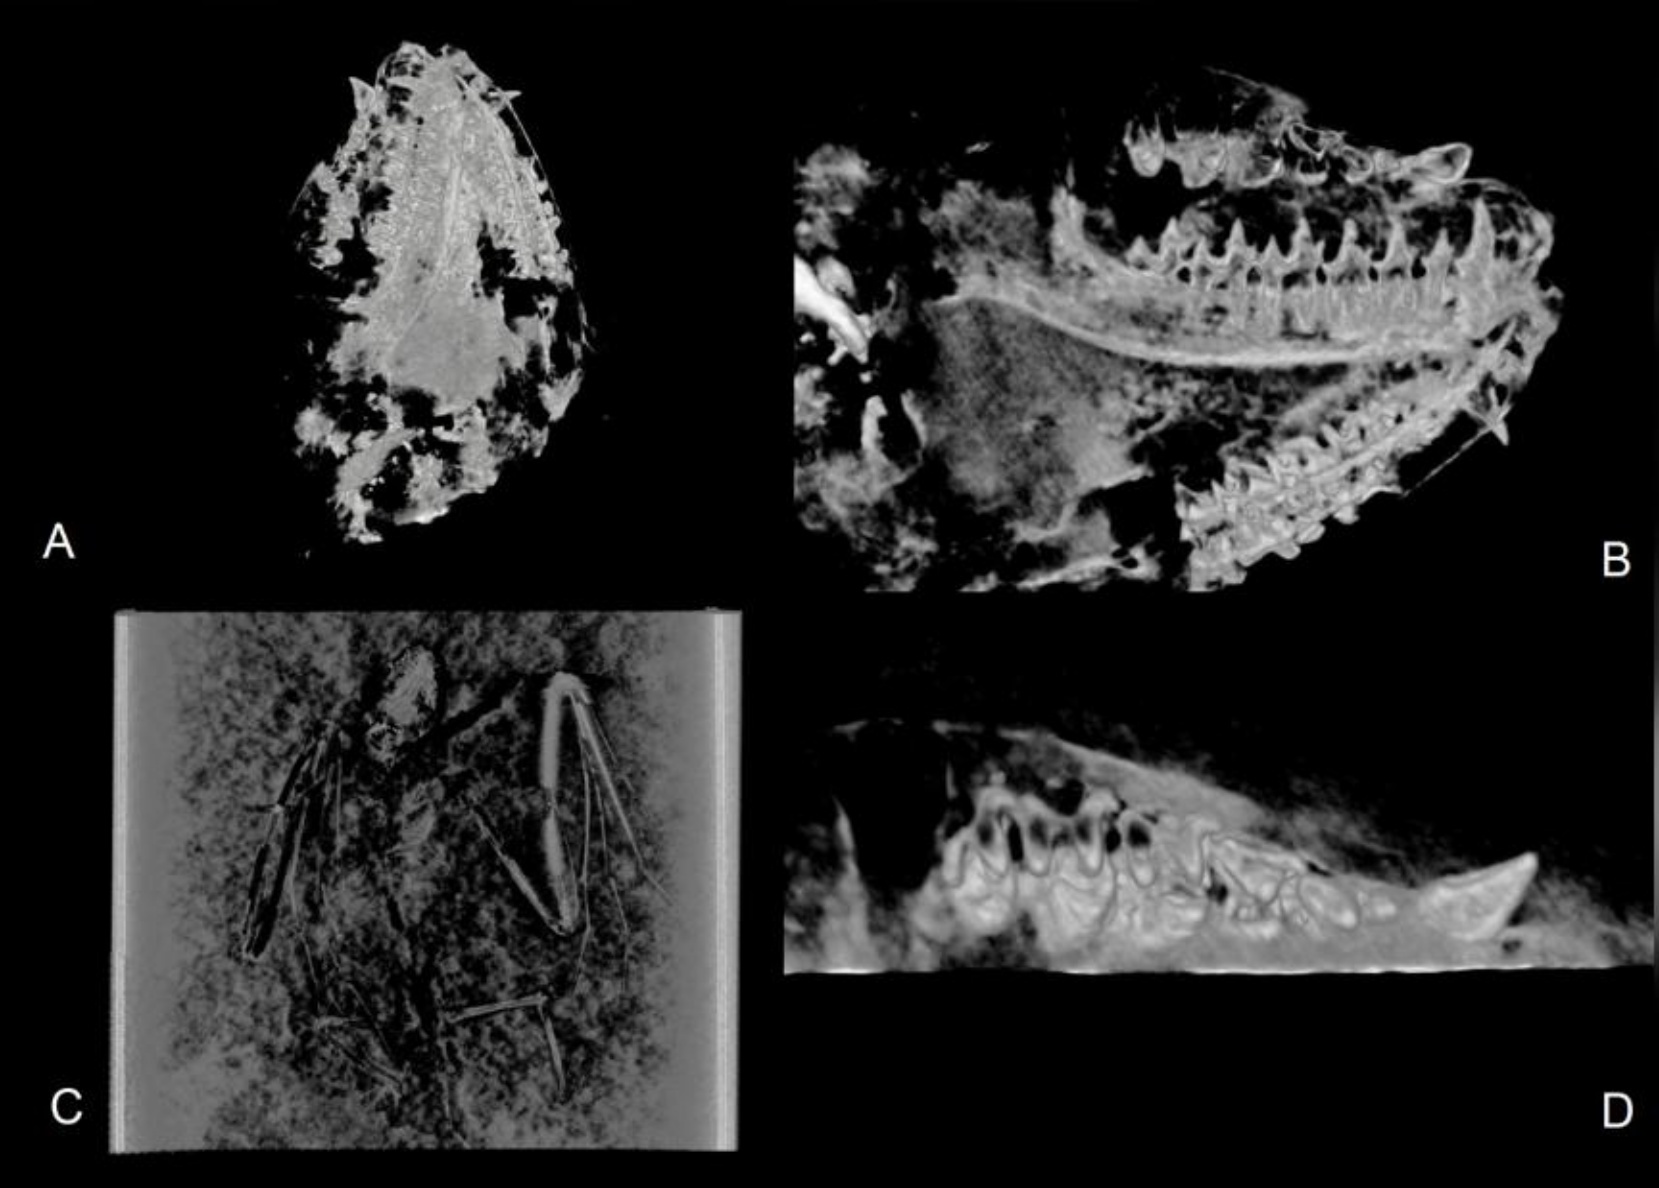 Aici sunt prezentate vizualizări CT ale Icaronycteris gunnelli, inclusiv următoarele vederi: A) vedere ventrală a craniului; B) vedere labială a dentarului drept; C) Schelet vedere dorsală; D) Vedere ocluzală a maxilarului drept.